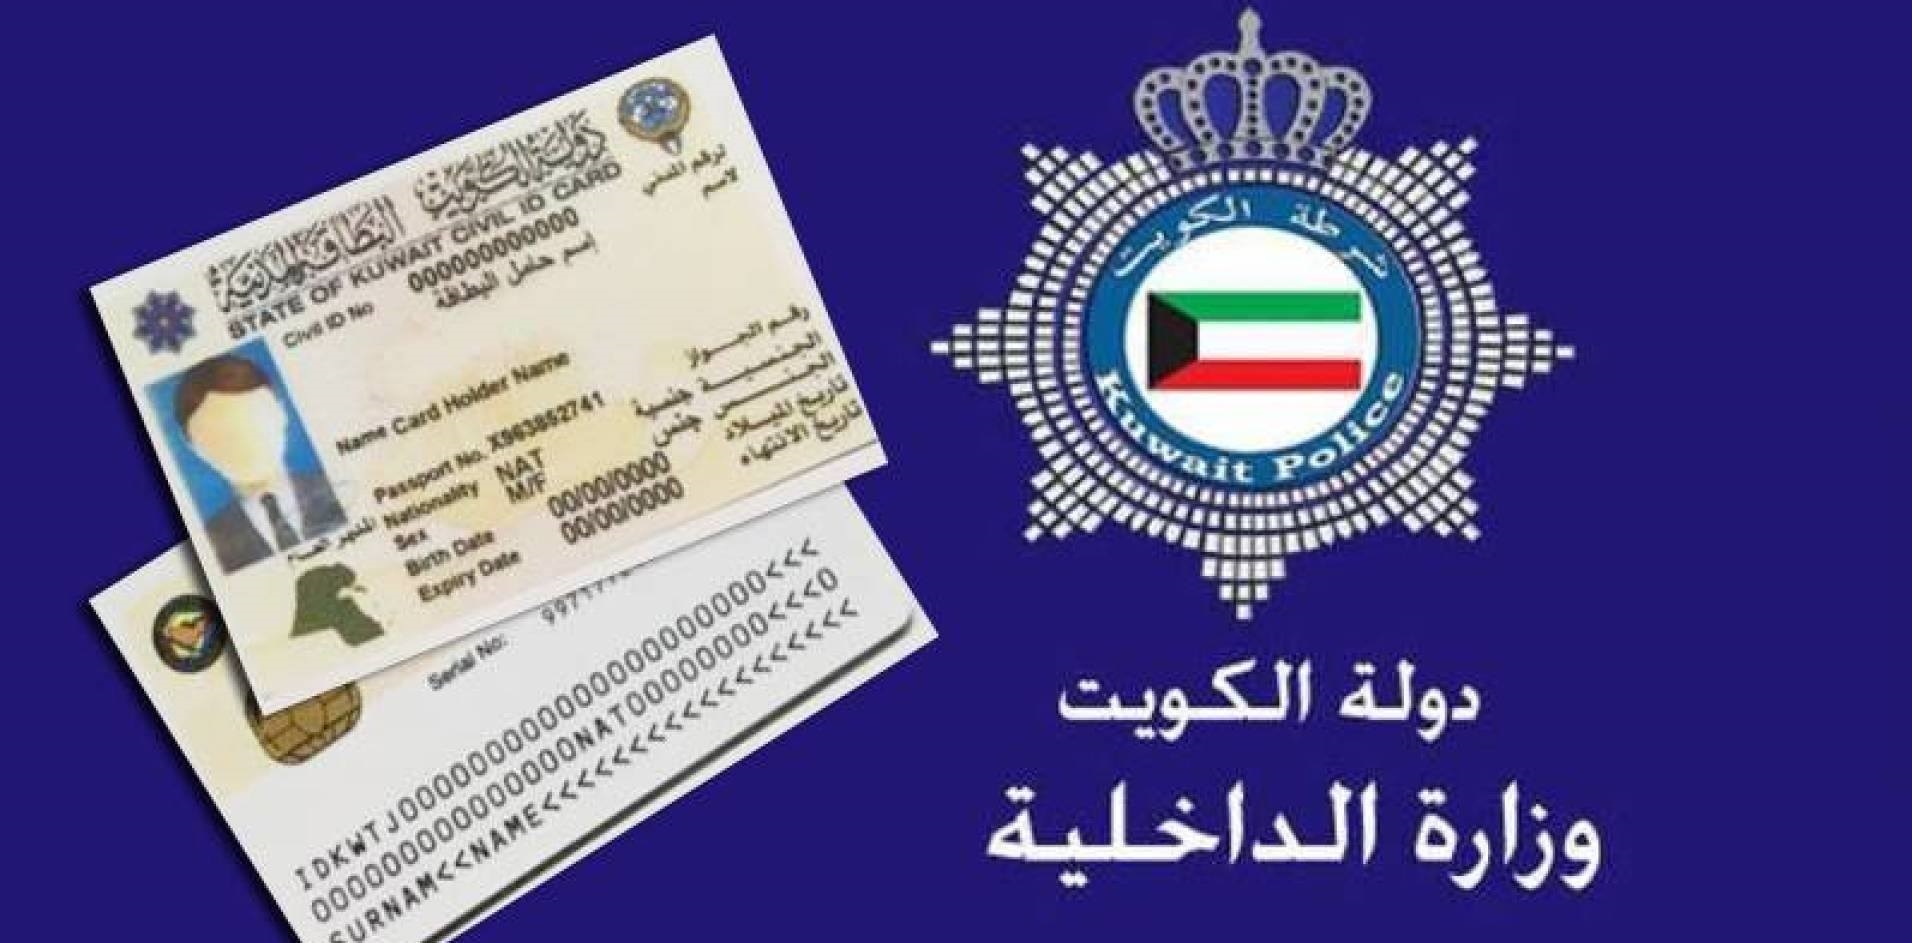 طريقة الاستعلام عن جاهزية البطاقة المدنية E.Gov.kw بالرقم المدني في الكويت